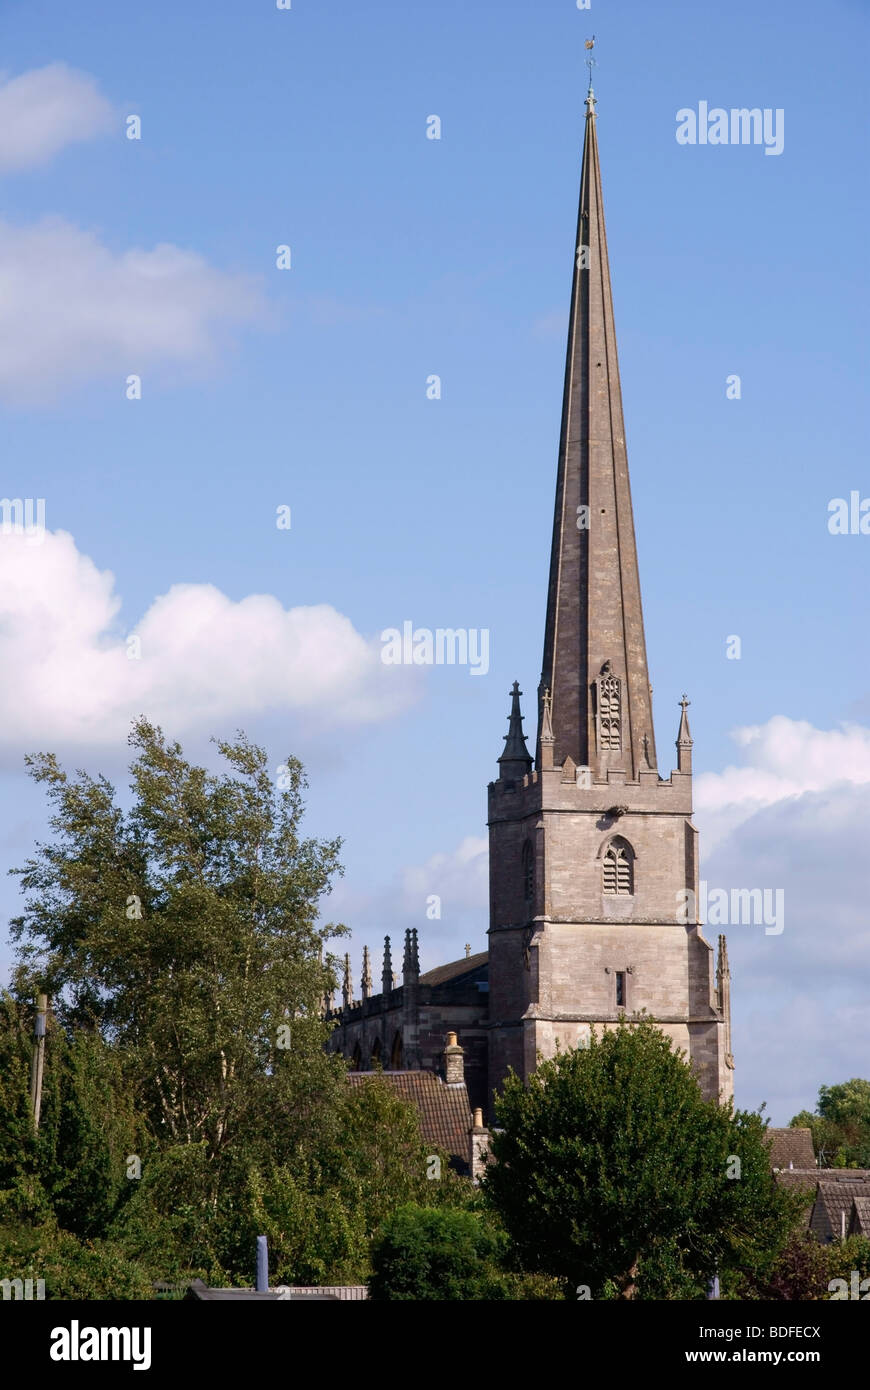 St Marys Church, Tetbury Stock Photo - Alamy